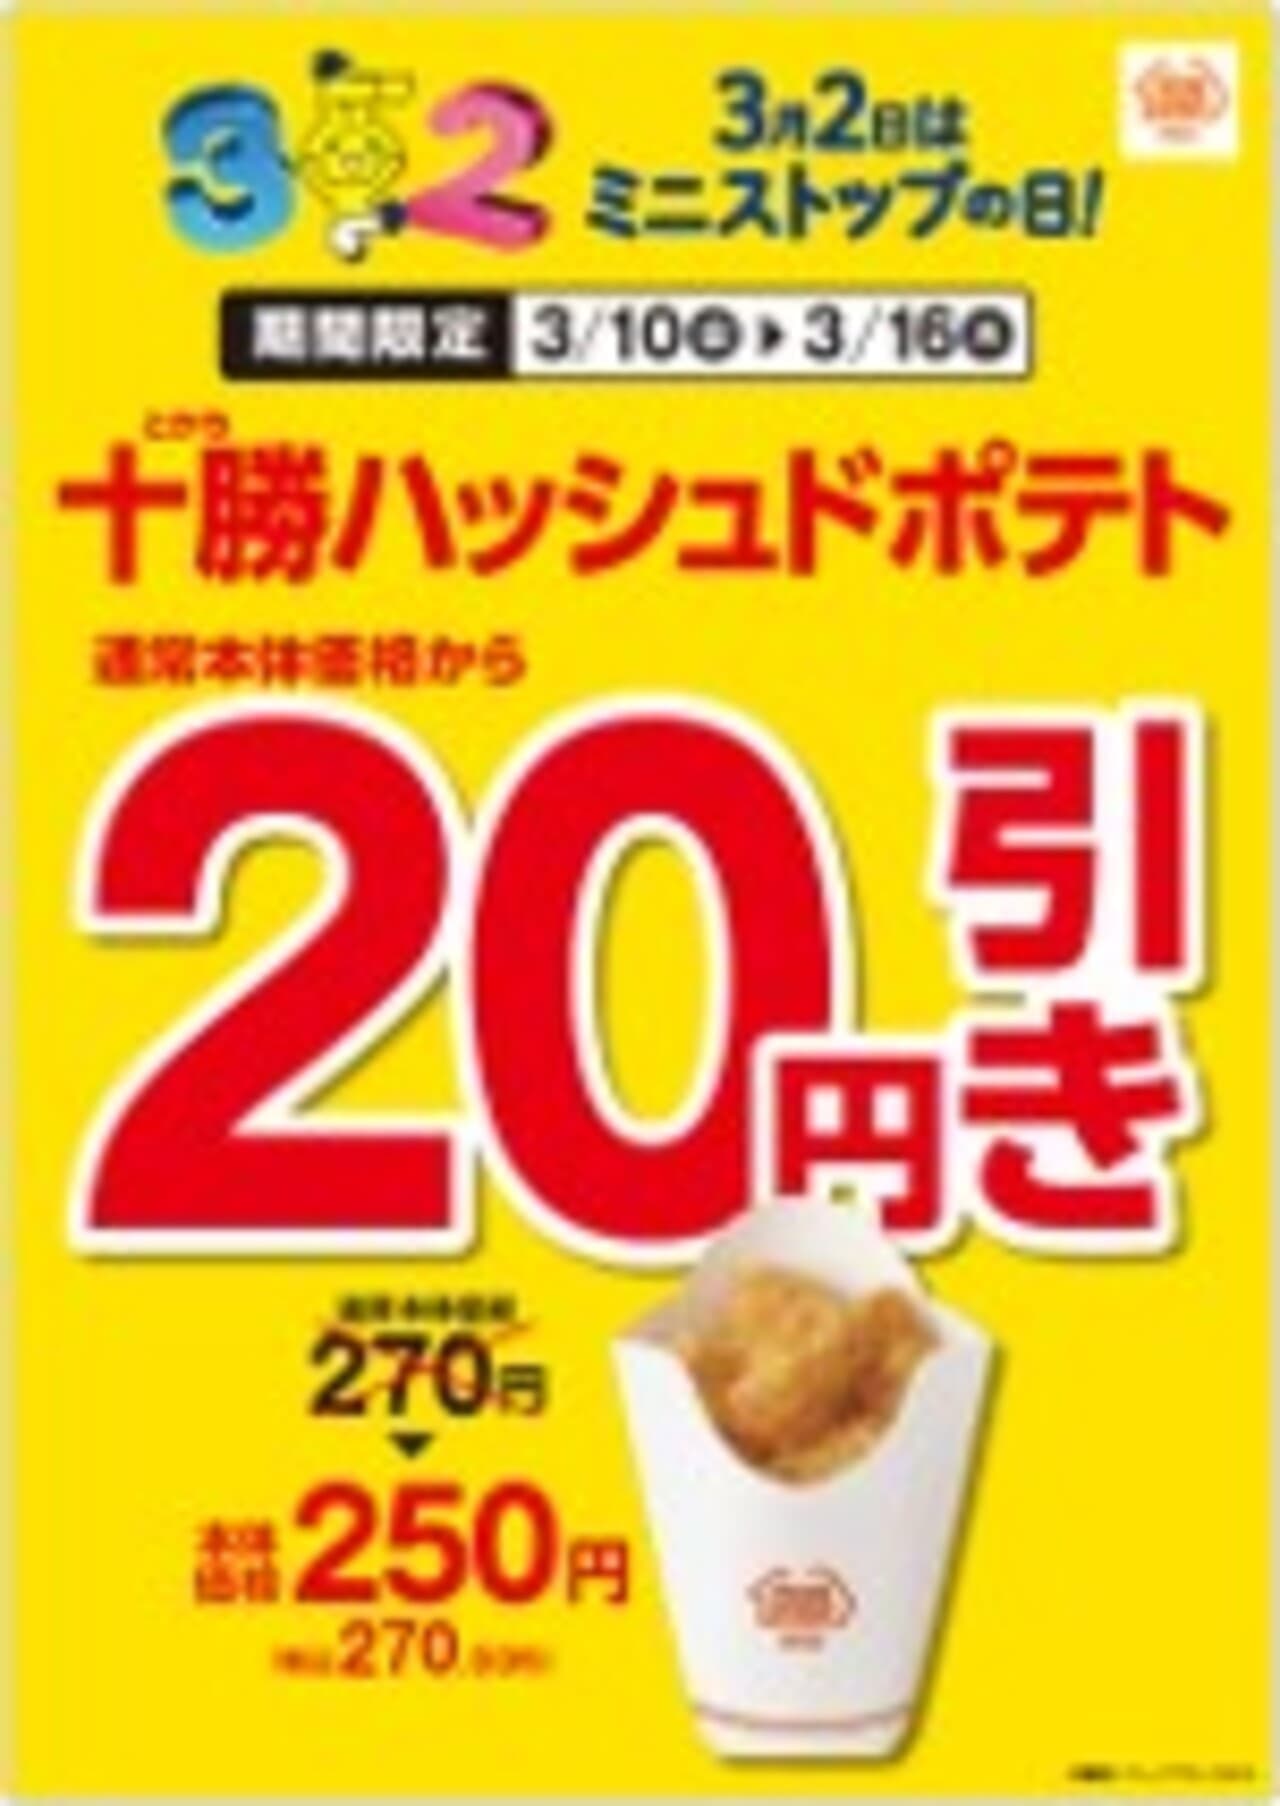 Ministop "Tokachi Hashed Potatoes 20 yen discount".